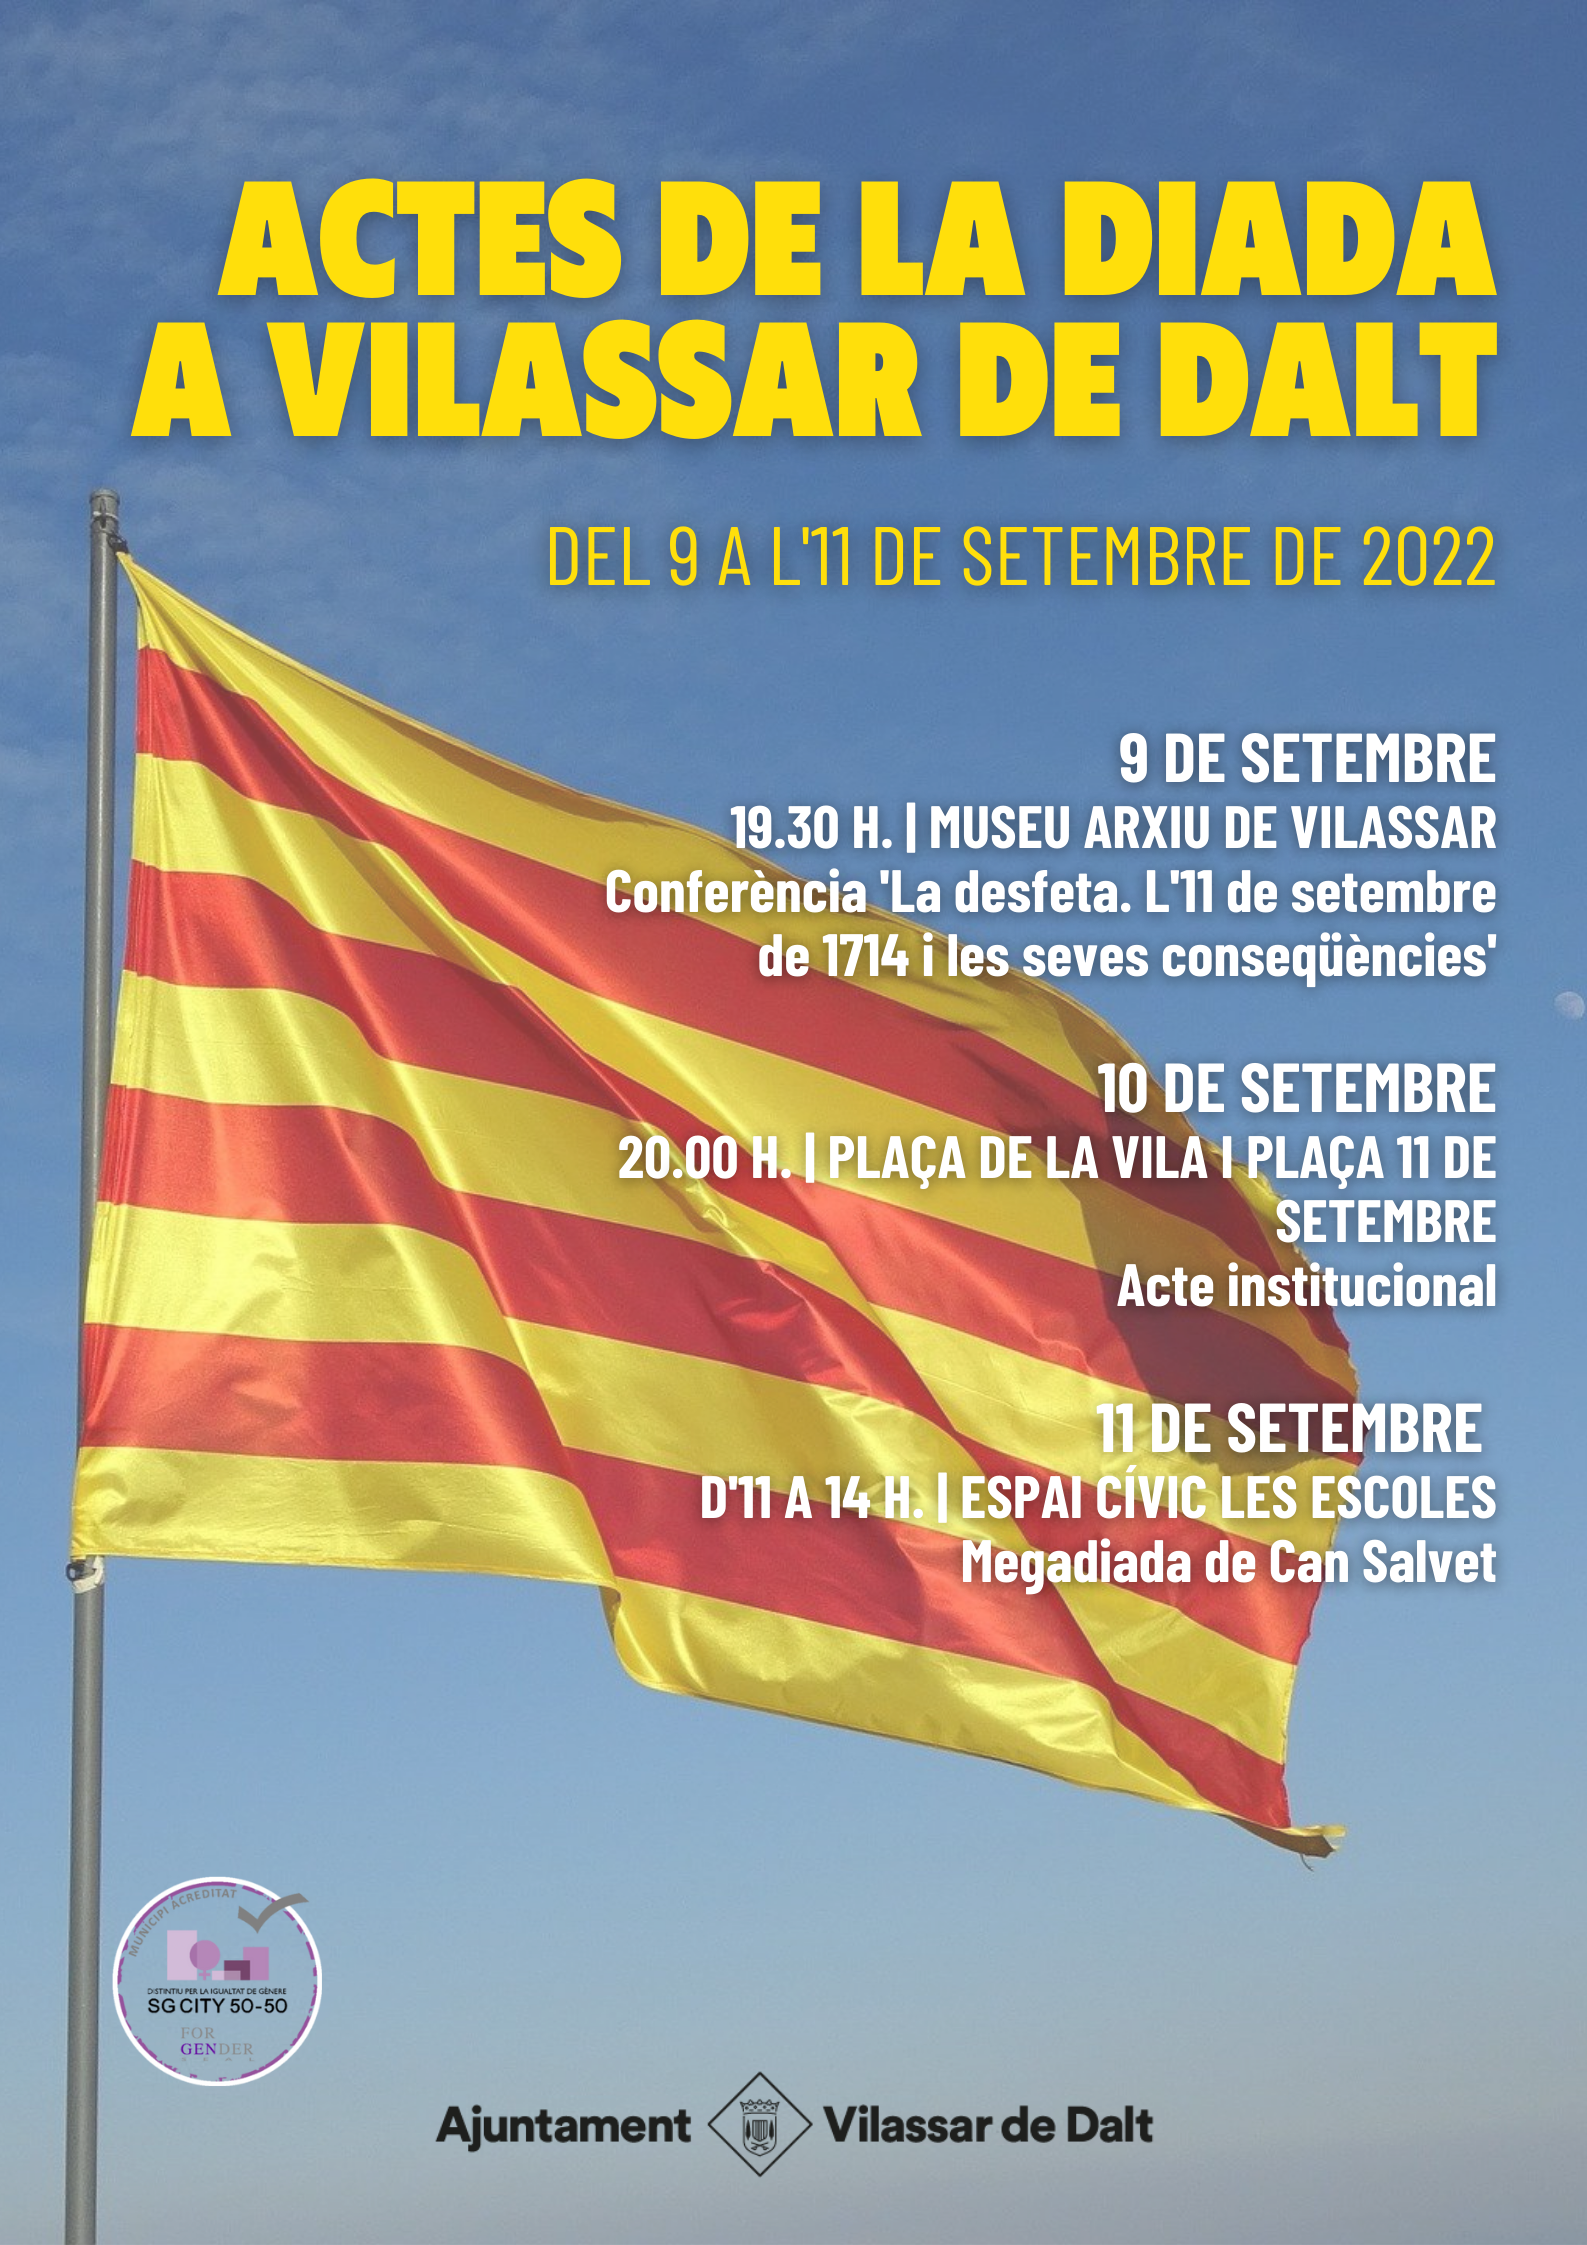 Vilassar commemora la Diada aquest cap de setmana